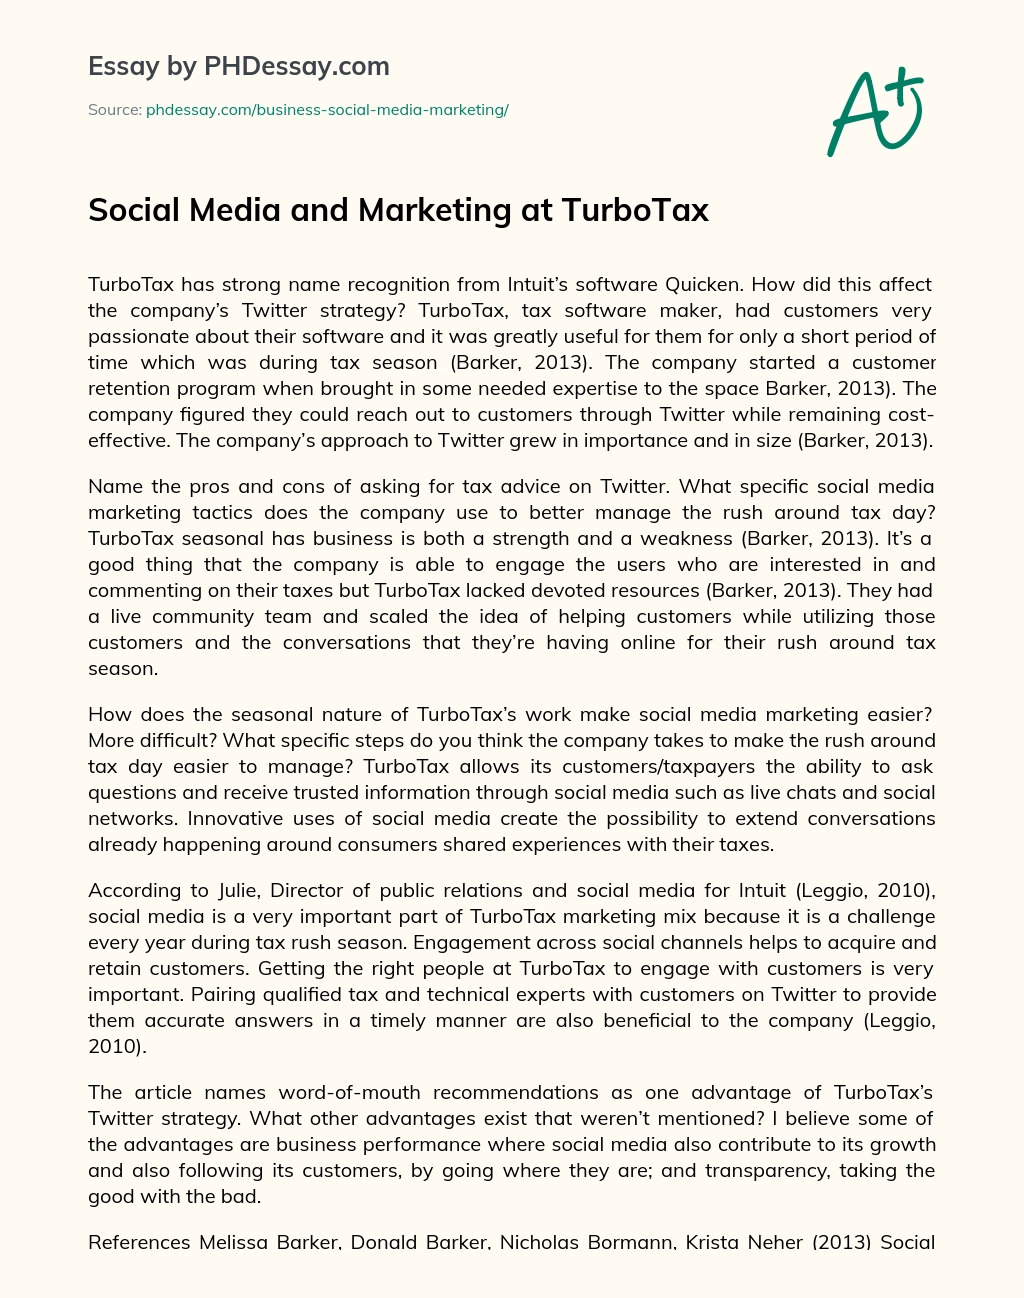 Social Media and Marketing at TurboTax essay